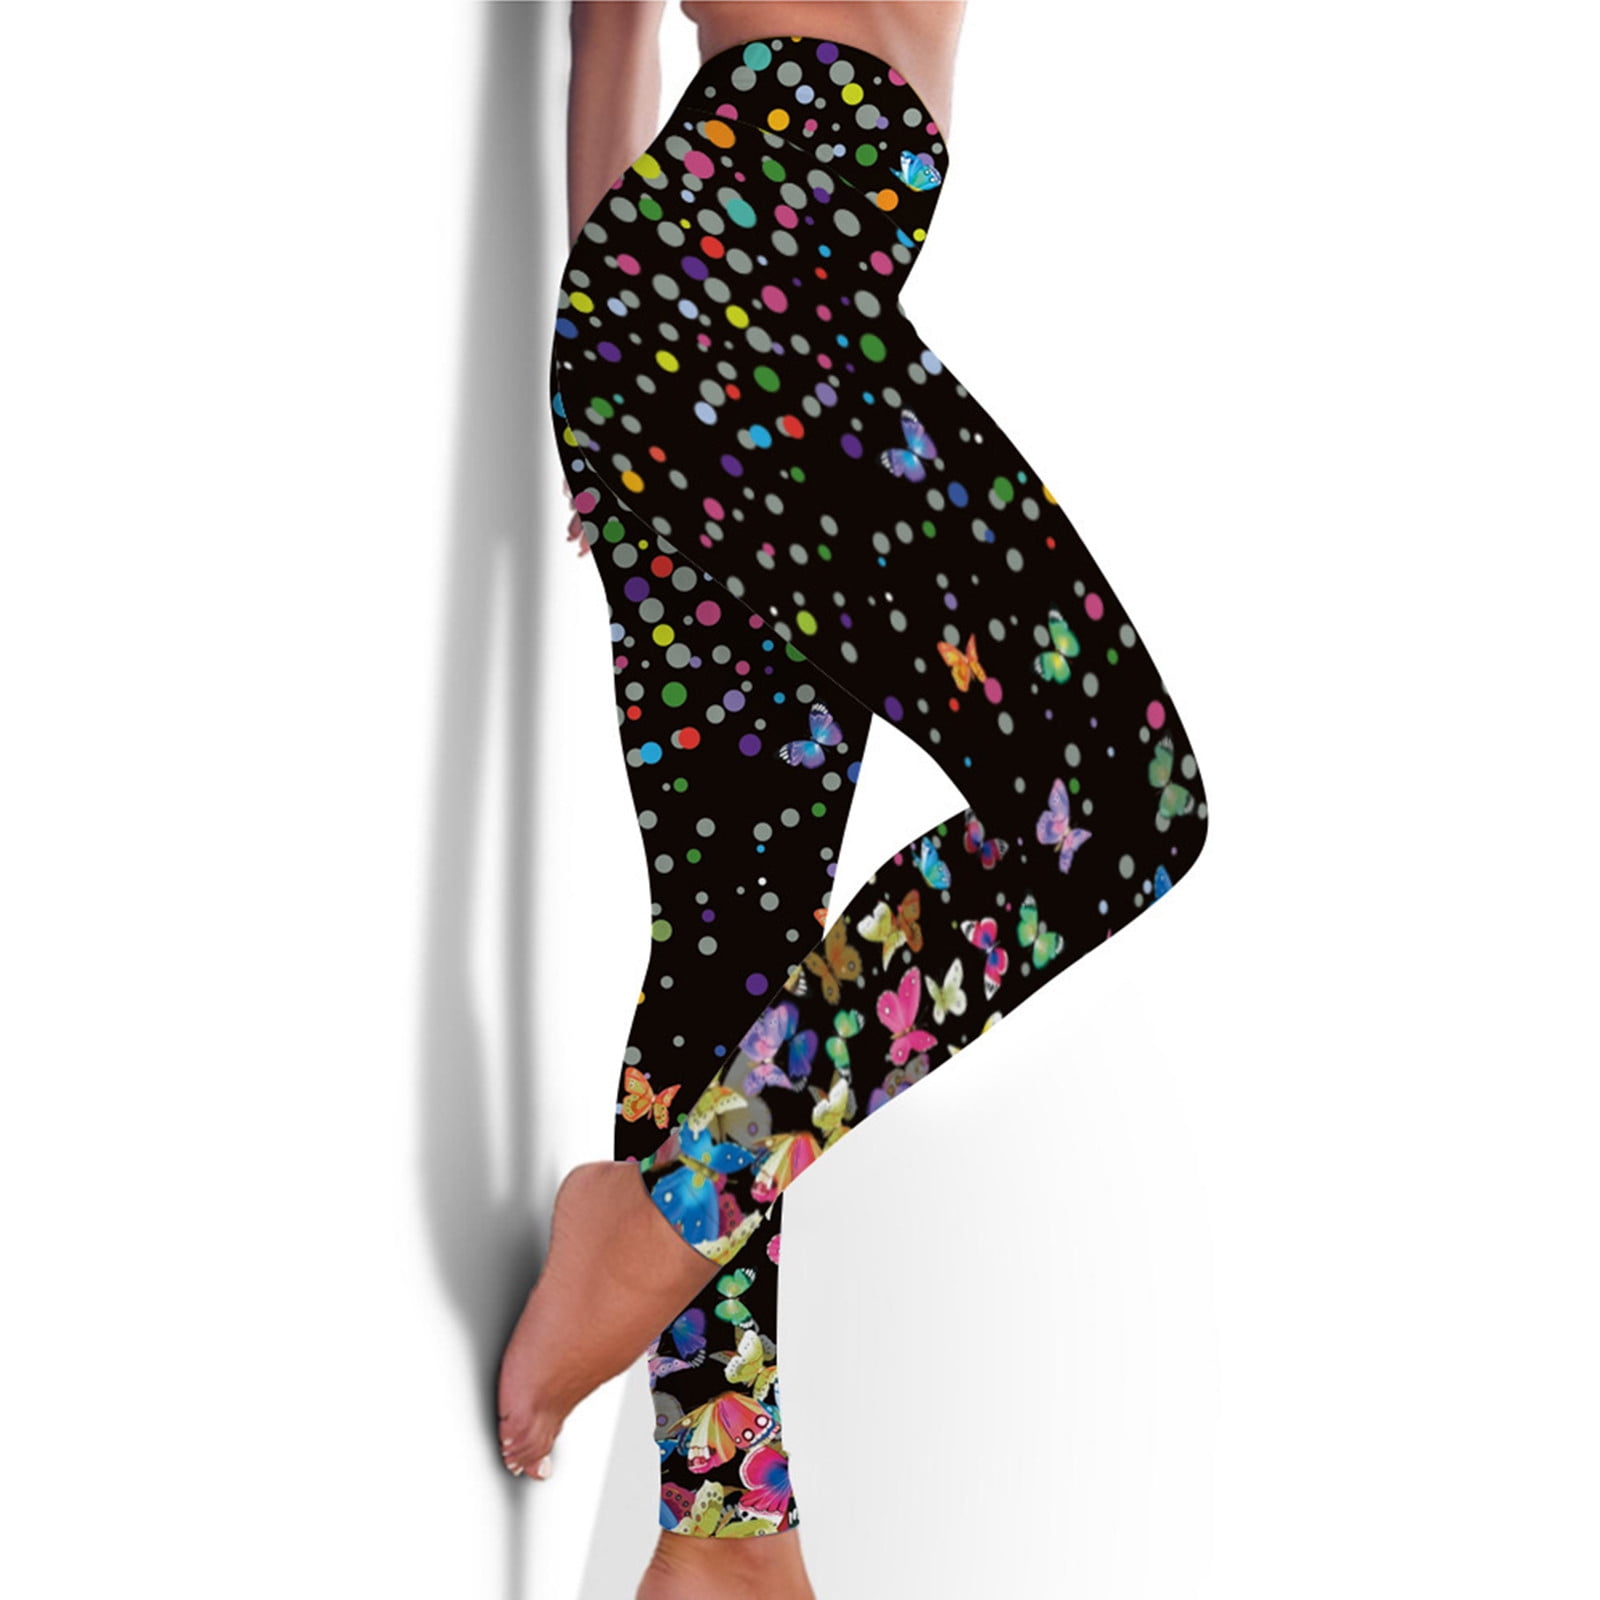 frehsky yoga pants women's fashion printed workout leggings